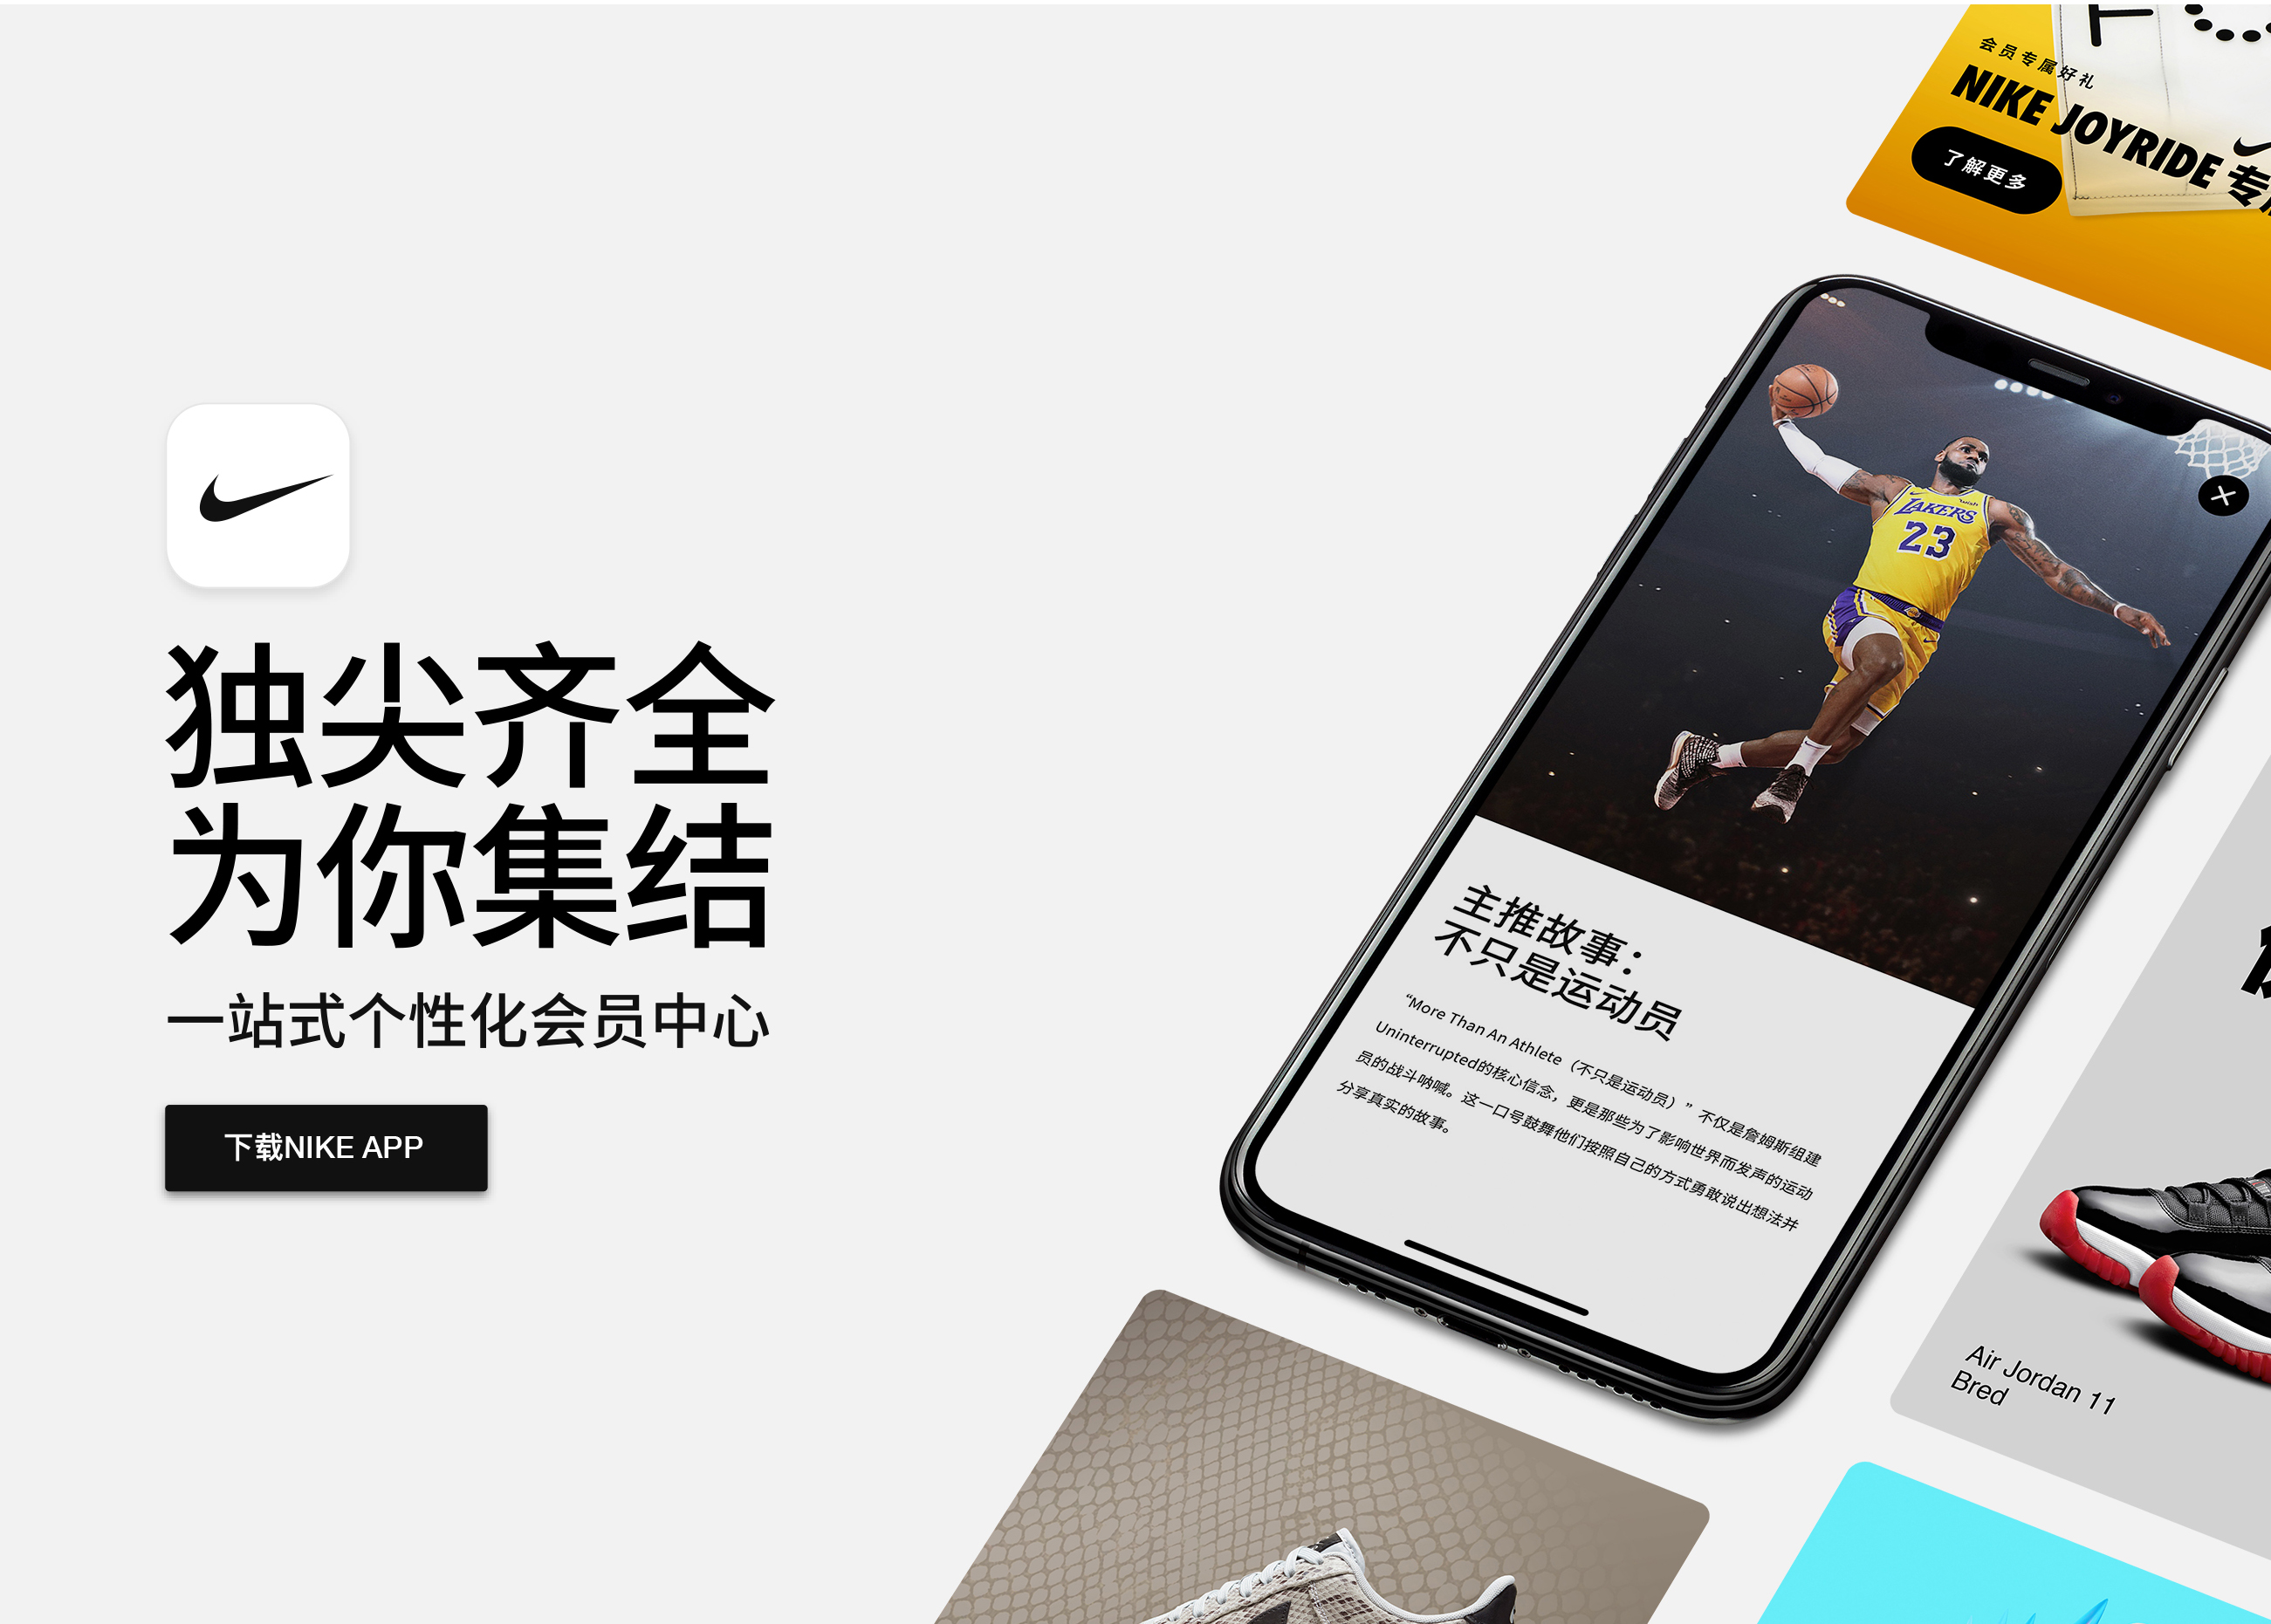 耐克官方应用程序Nike App中文版正式上线